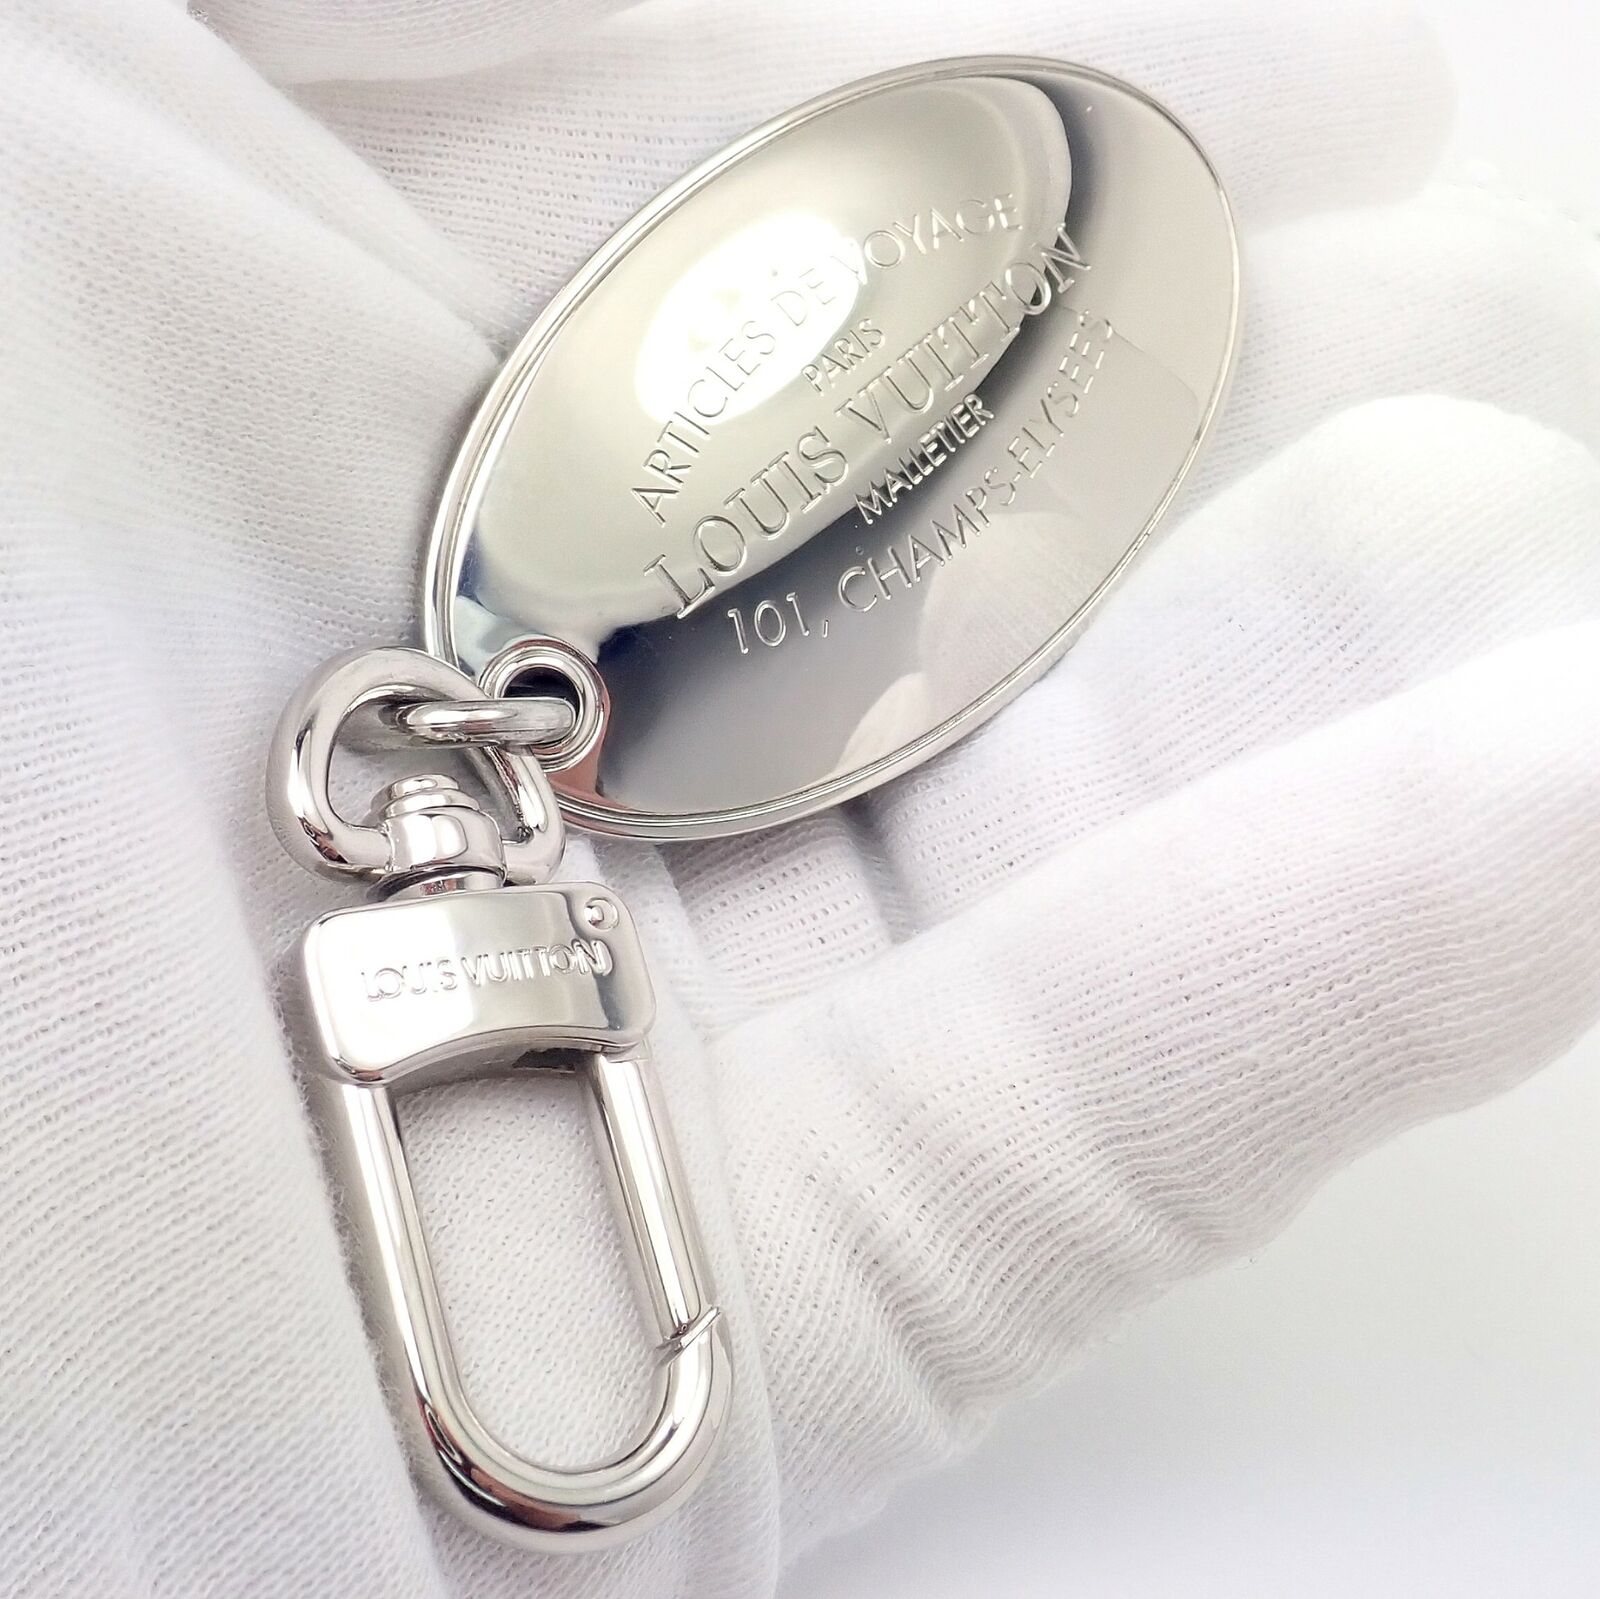 Authentic keychain, Lv Bag Holder, Lv Key Holder